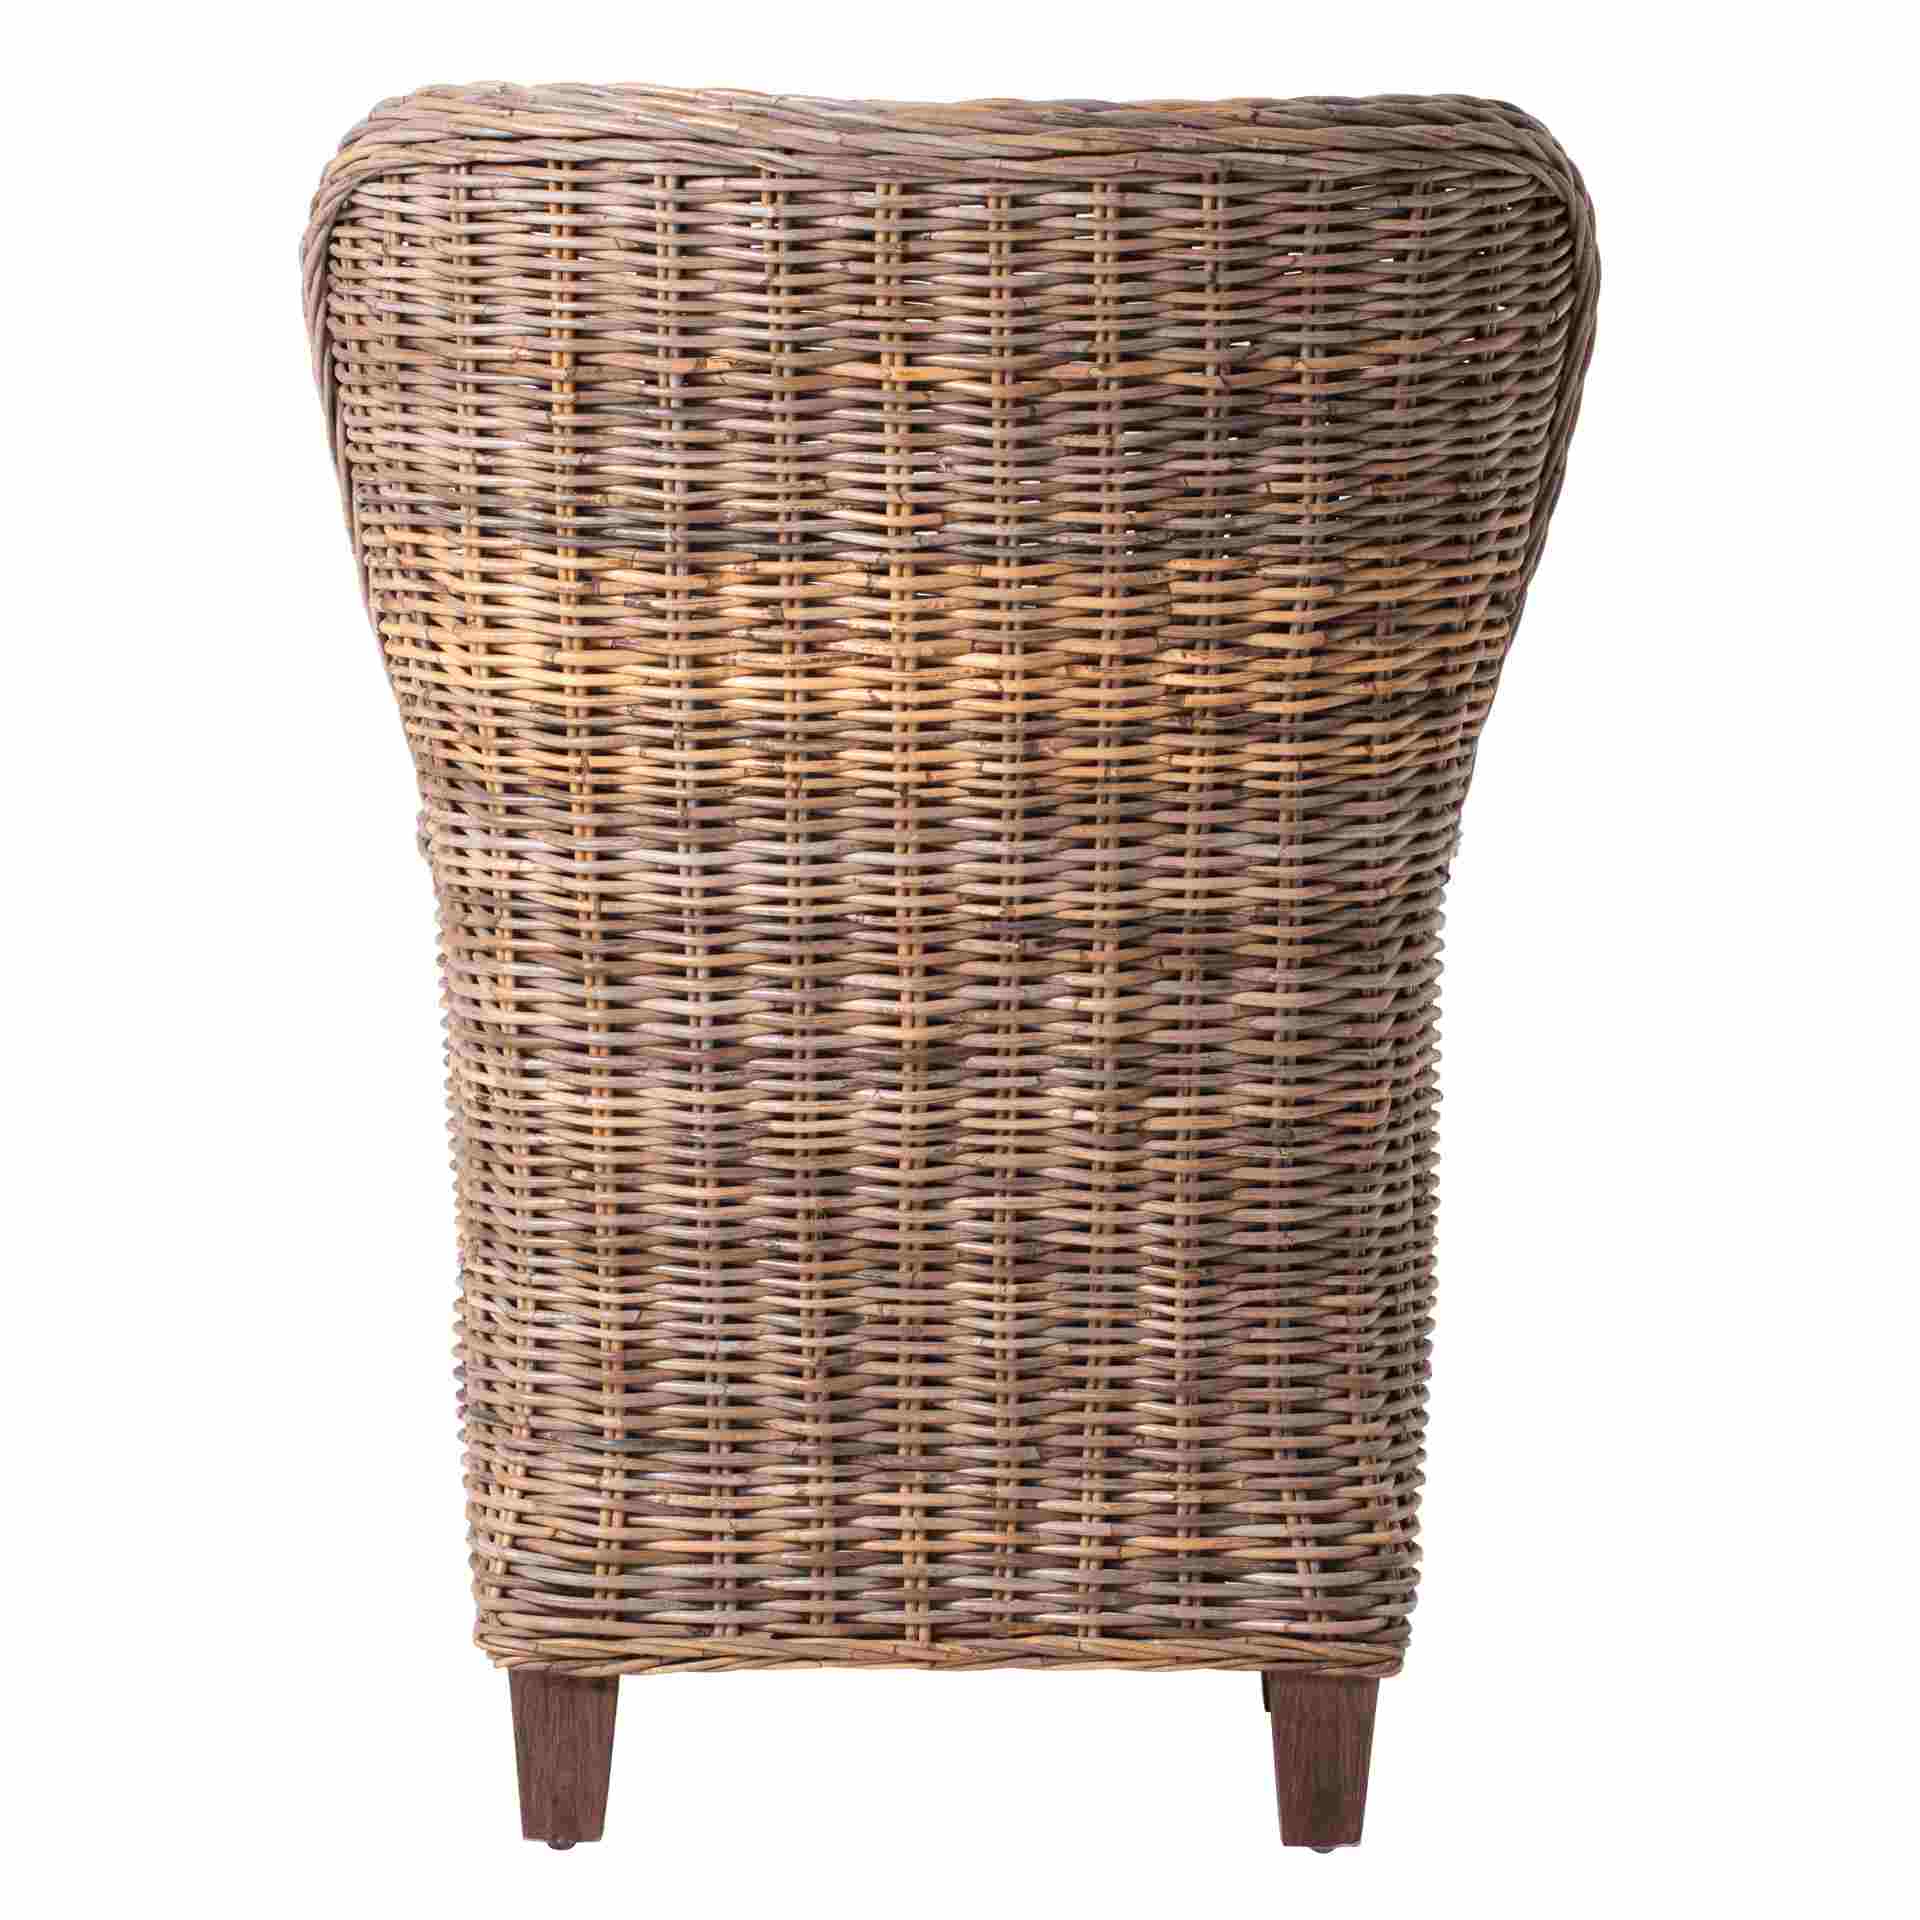 Der Armlehnstuhl King überzeugt mit seinem Landhaus Stil. Gefertigt wurde er aus Kabu Rattan, welches einen natürlichen Farbton besitzt. Der Stuhl verfügt über eine Armlehne. Die Sitzhöhe beträgt beträgt 35 cm.